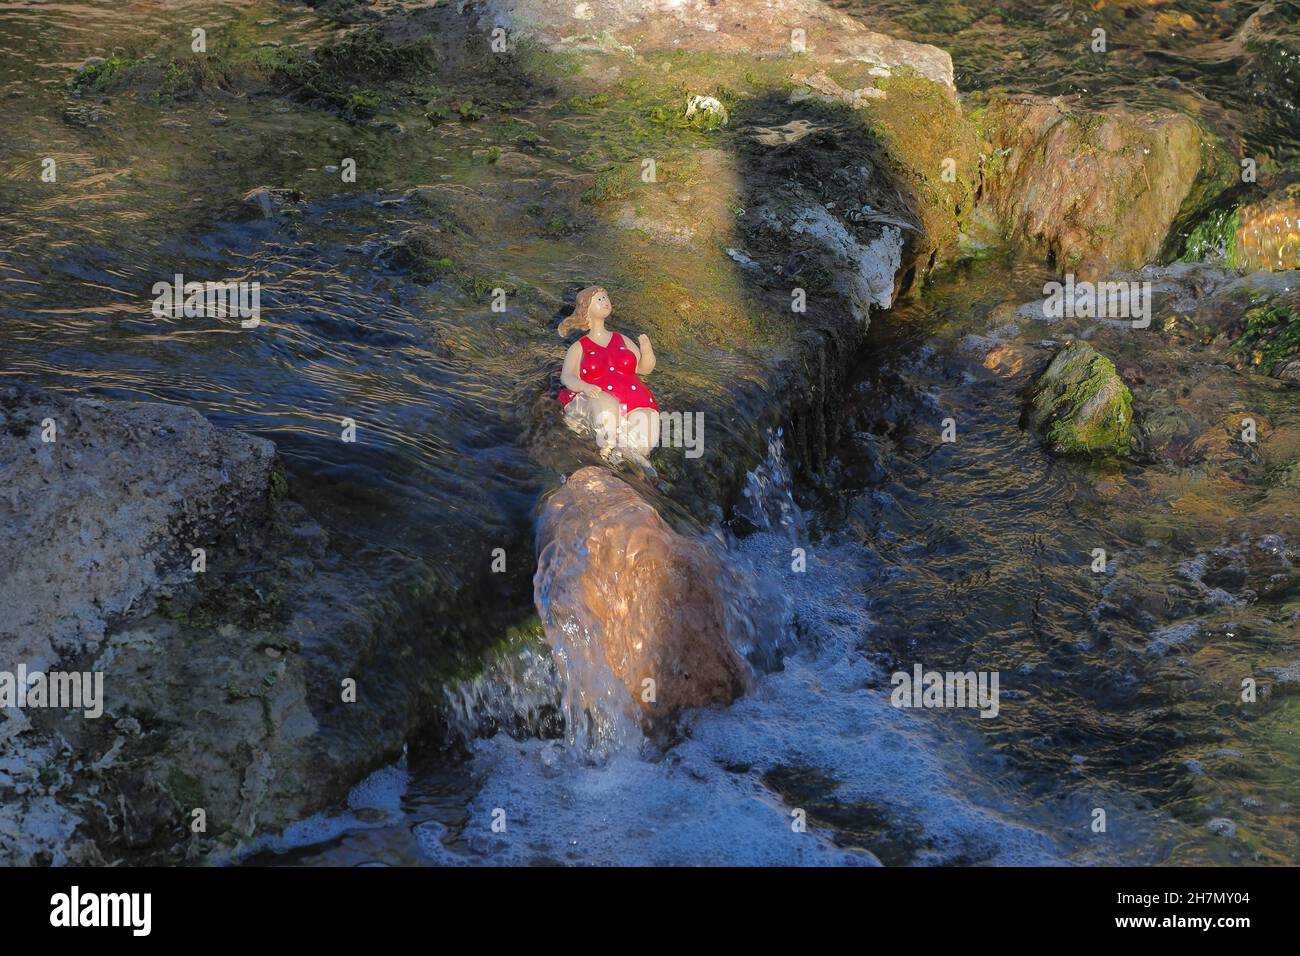 Badegäste am Wasserfall, Figur am Wasserfall, Steinfigur am Wasser, sitzende Frauenskulptur in rotem Schwimmkostüm am Wasser Stockfoto